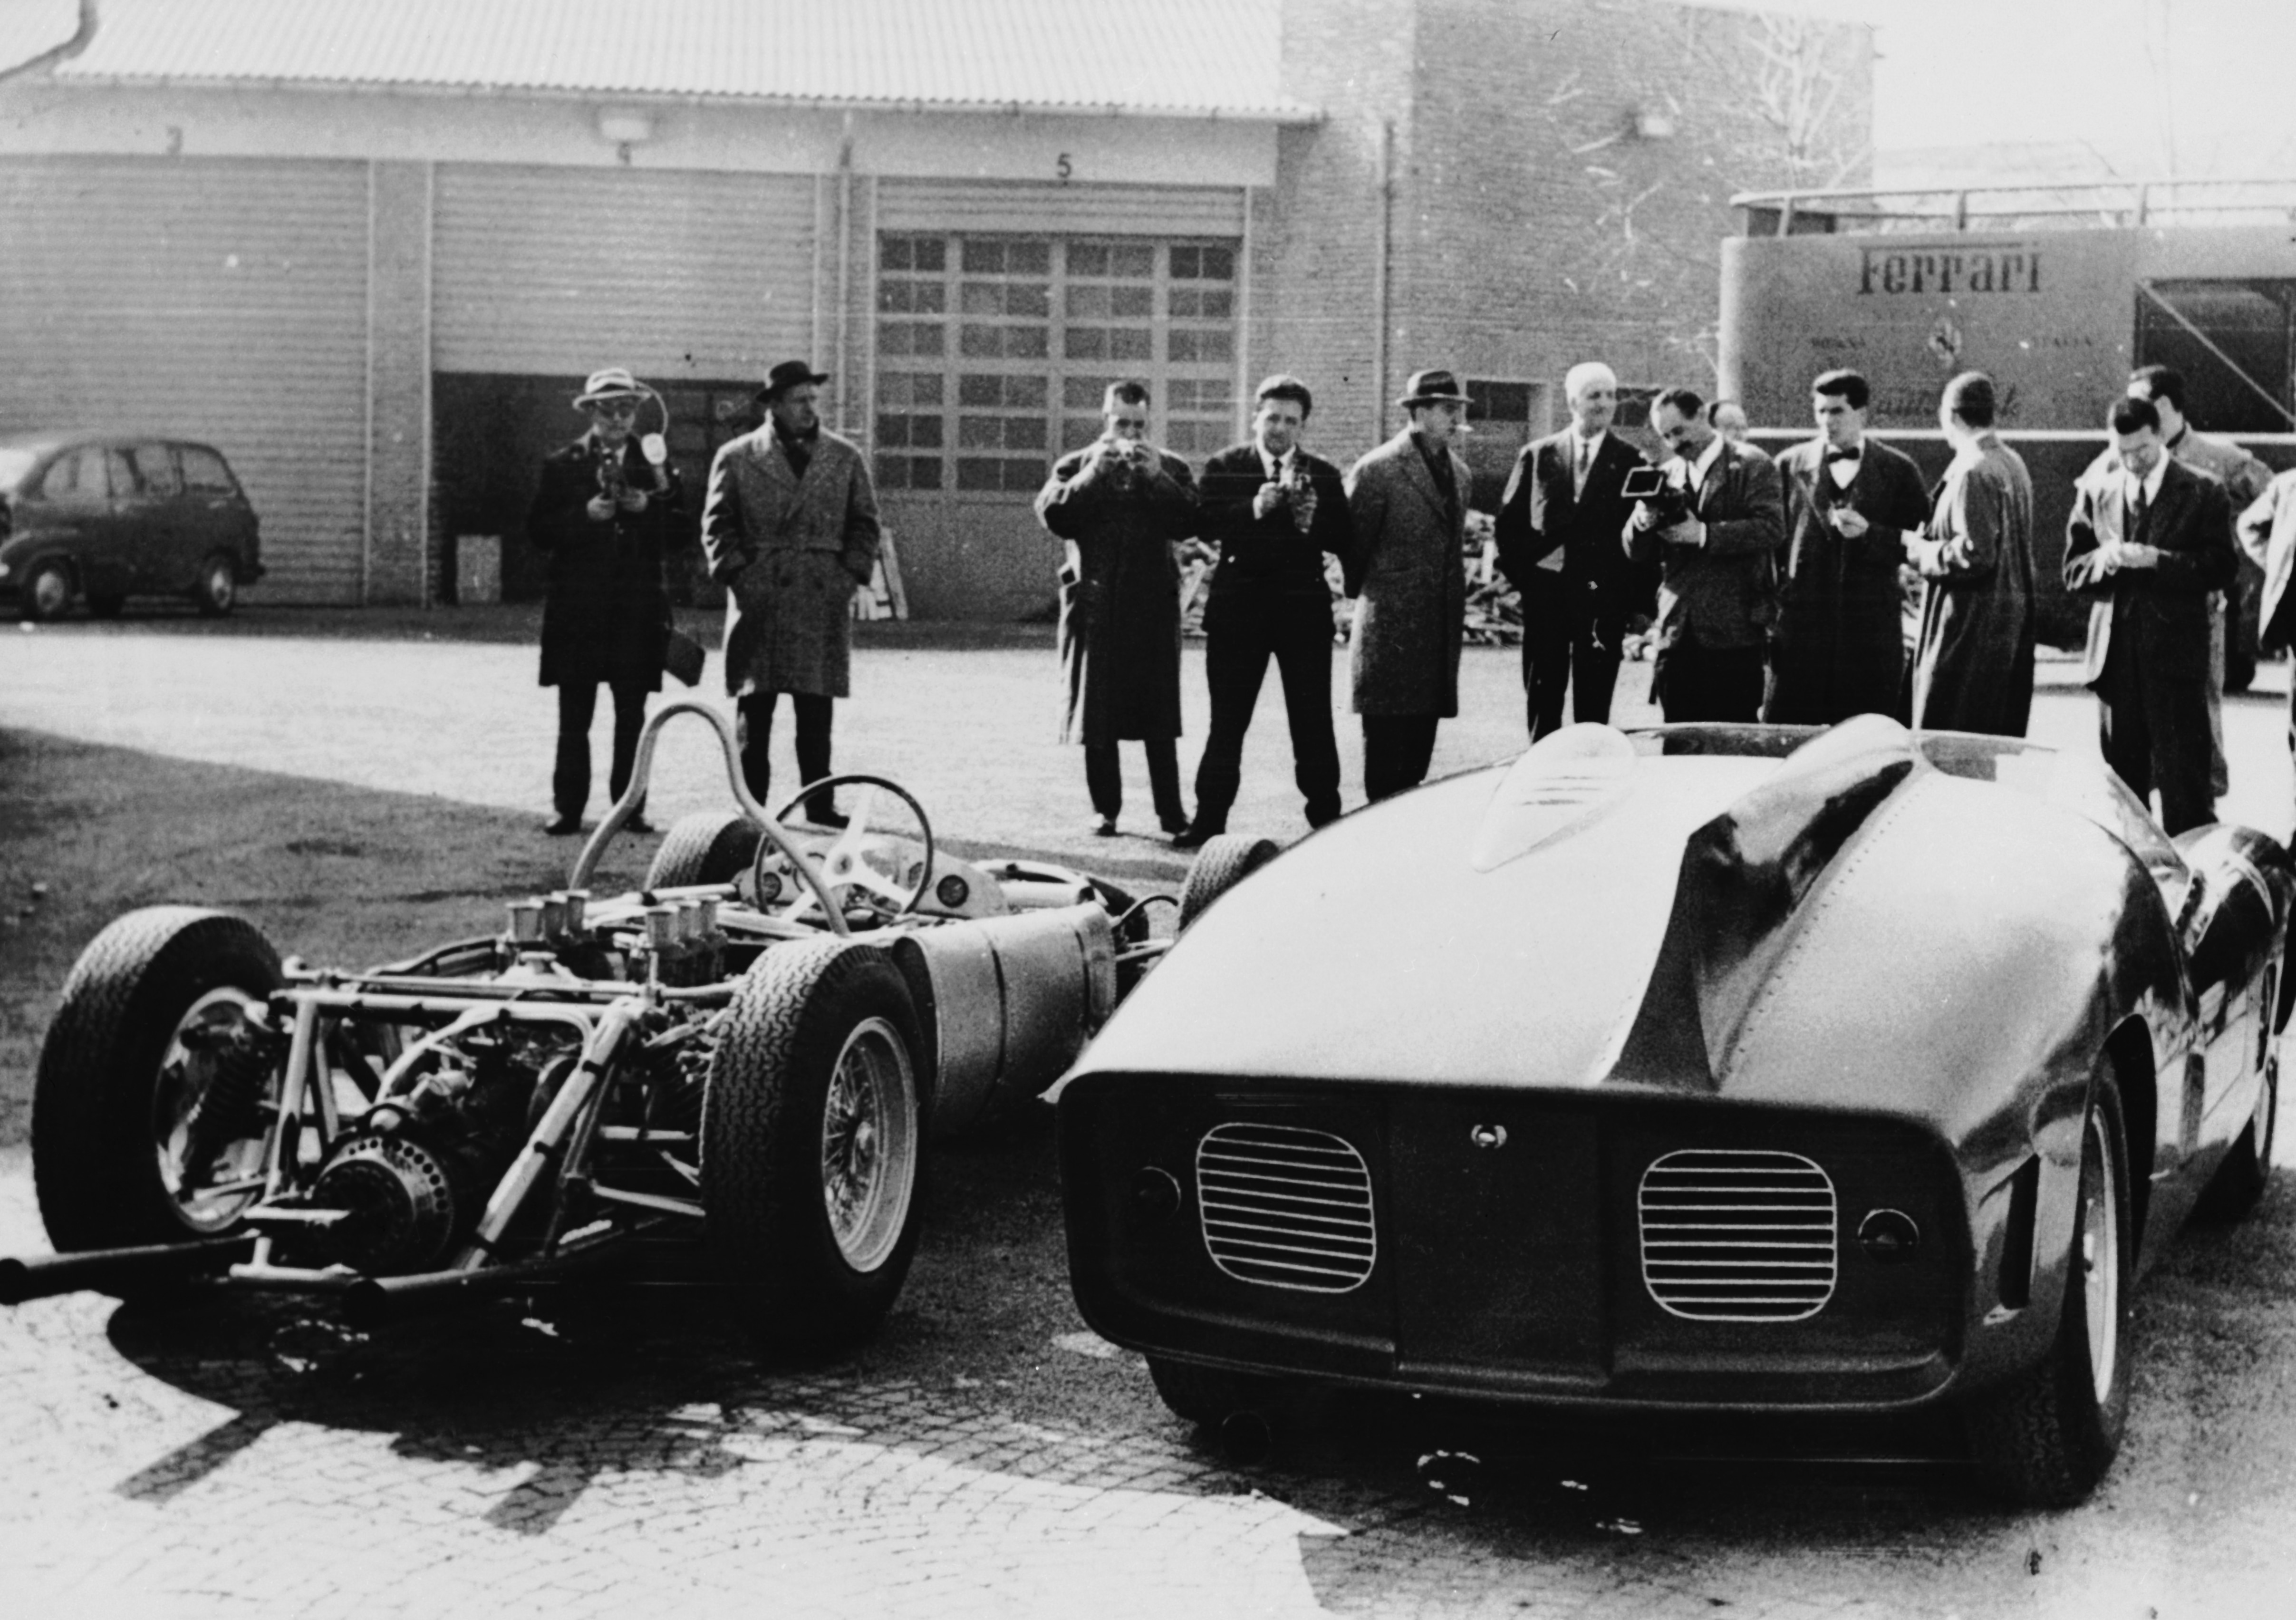 La casa automobilistica italiana Ferrari mostra le sue nuove auto da corsa alla stampa presso lo stabilimento di Maranello in Italia, il 17 febbraio 1961